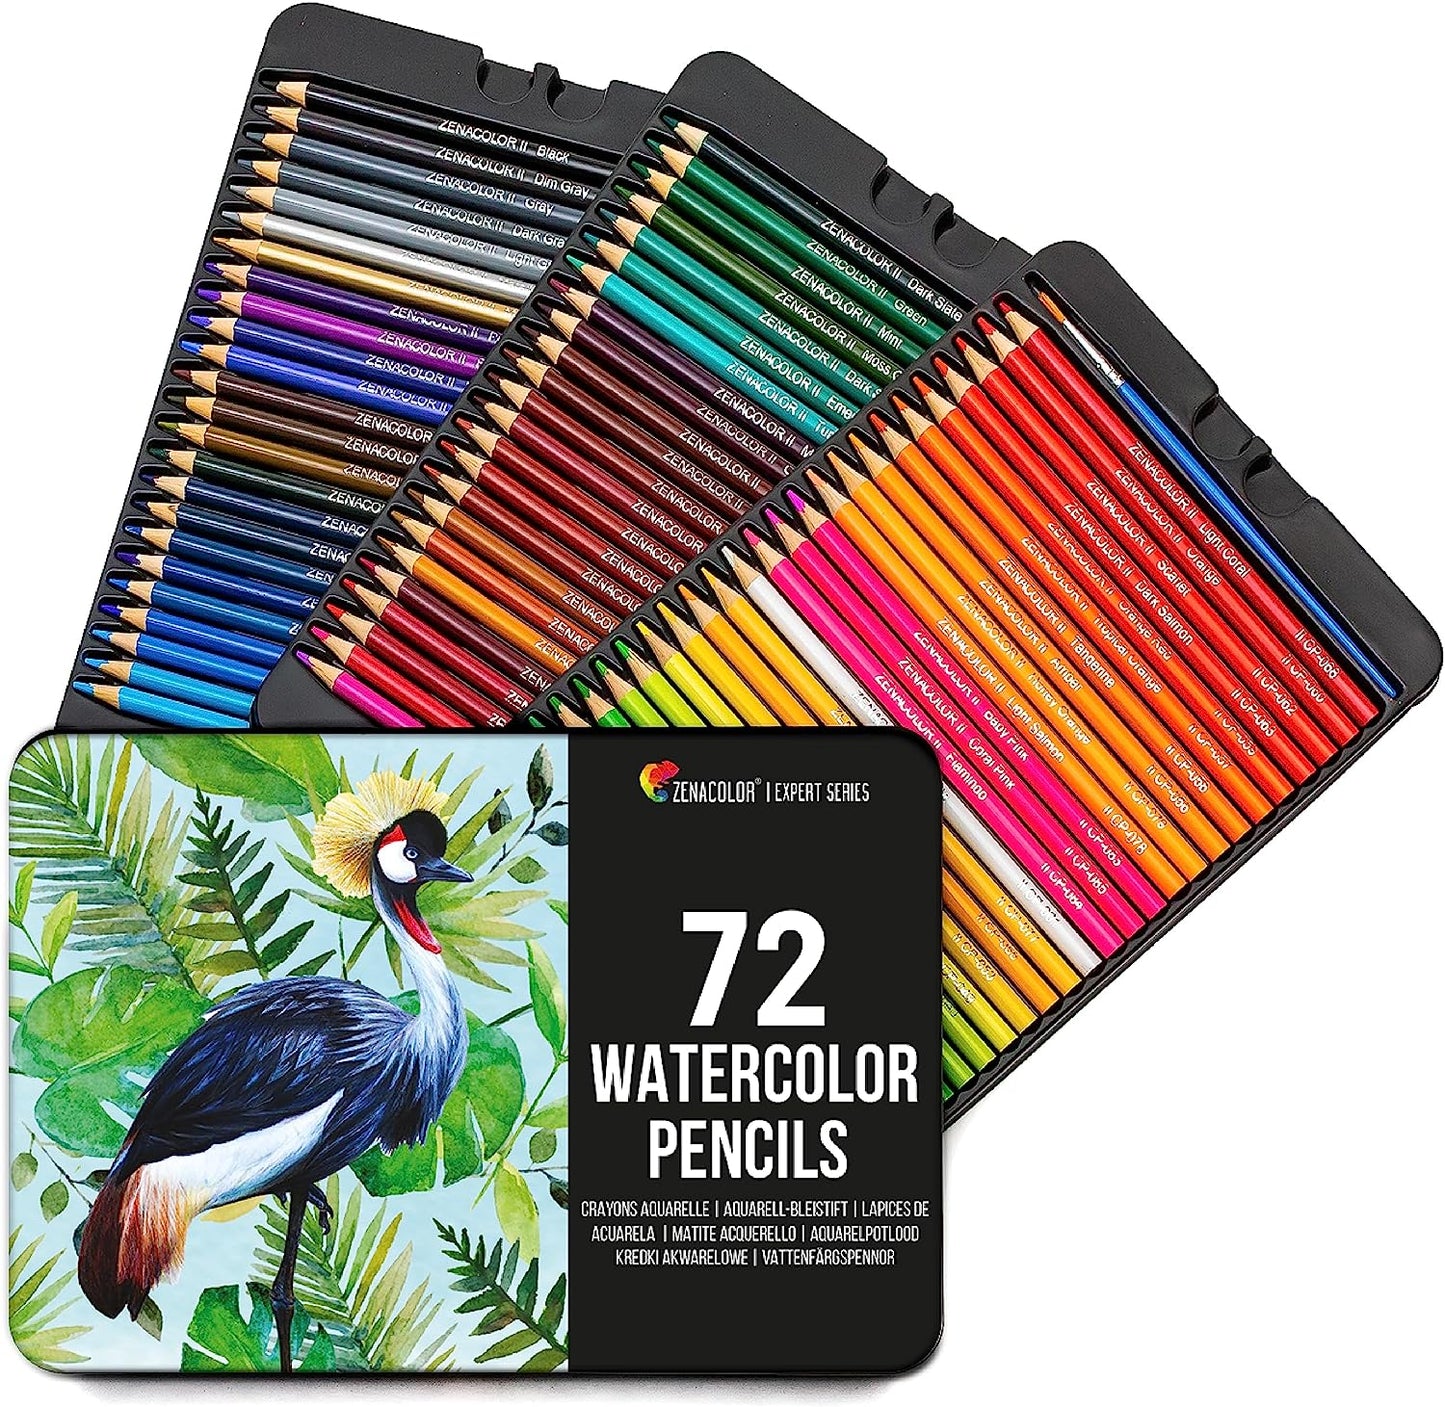 72 Watercolor Pencils